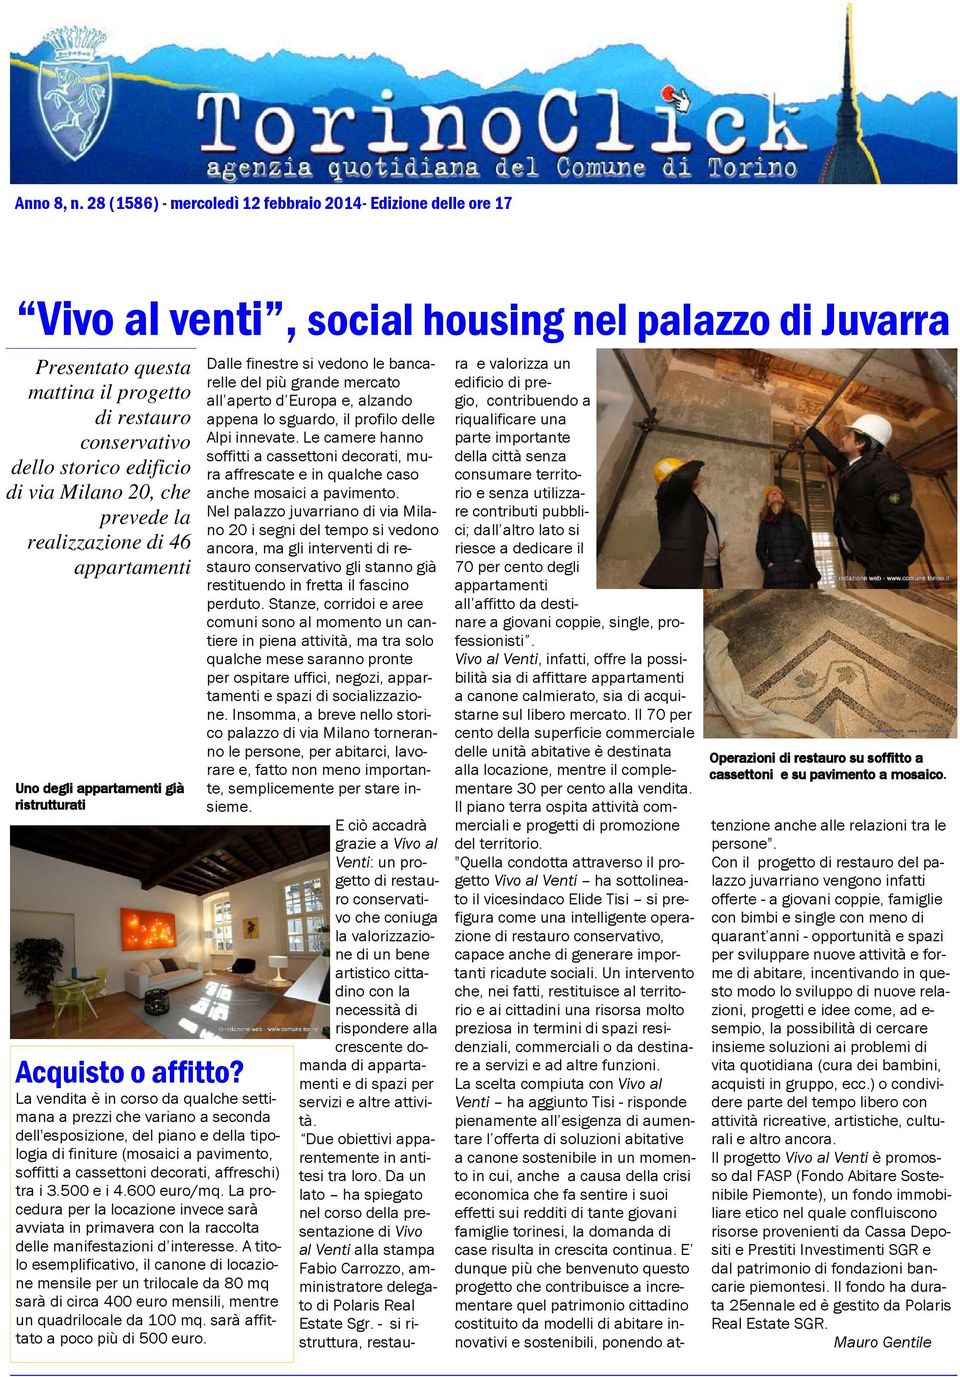 edificio di via Milano 20, che prevede la realizzazione di 46 appartamenti Uno degli appartamenti già ristrutturati Acquisto o affitto?